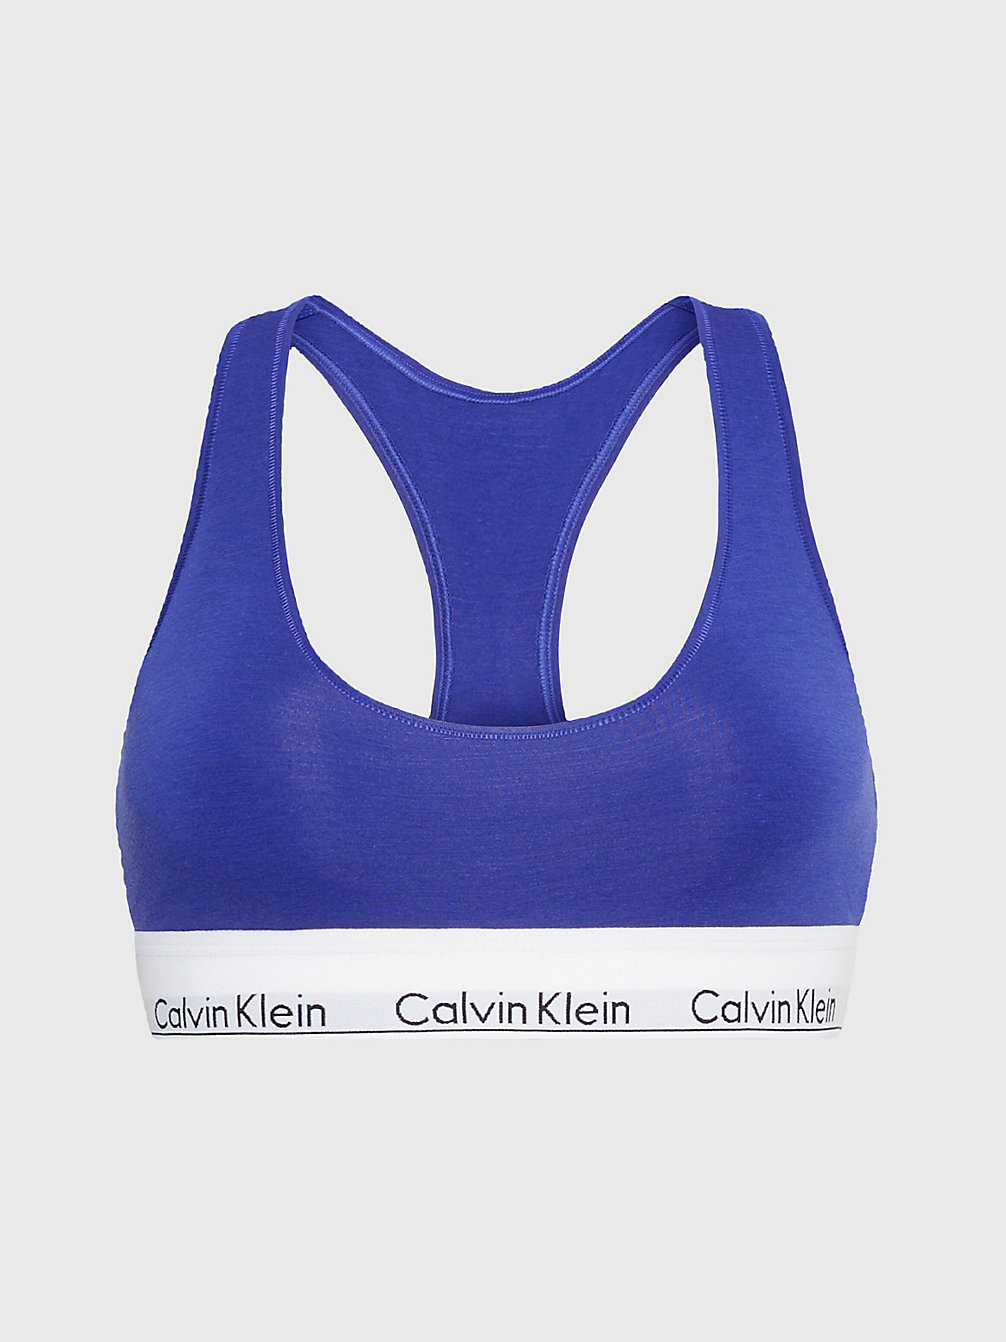 Corpiño - Modern Cotton > SPECTRUM BLUE > undefined mujer > Calvin Klein